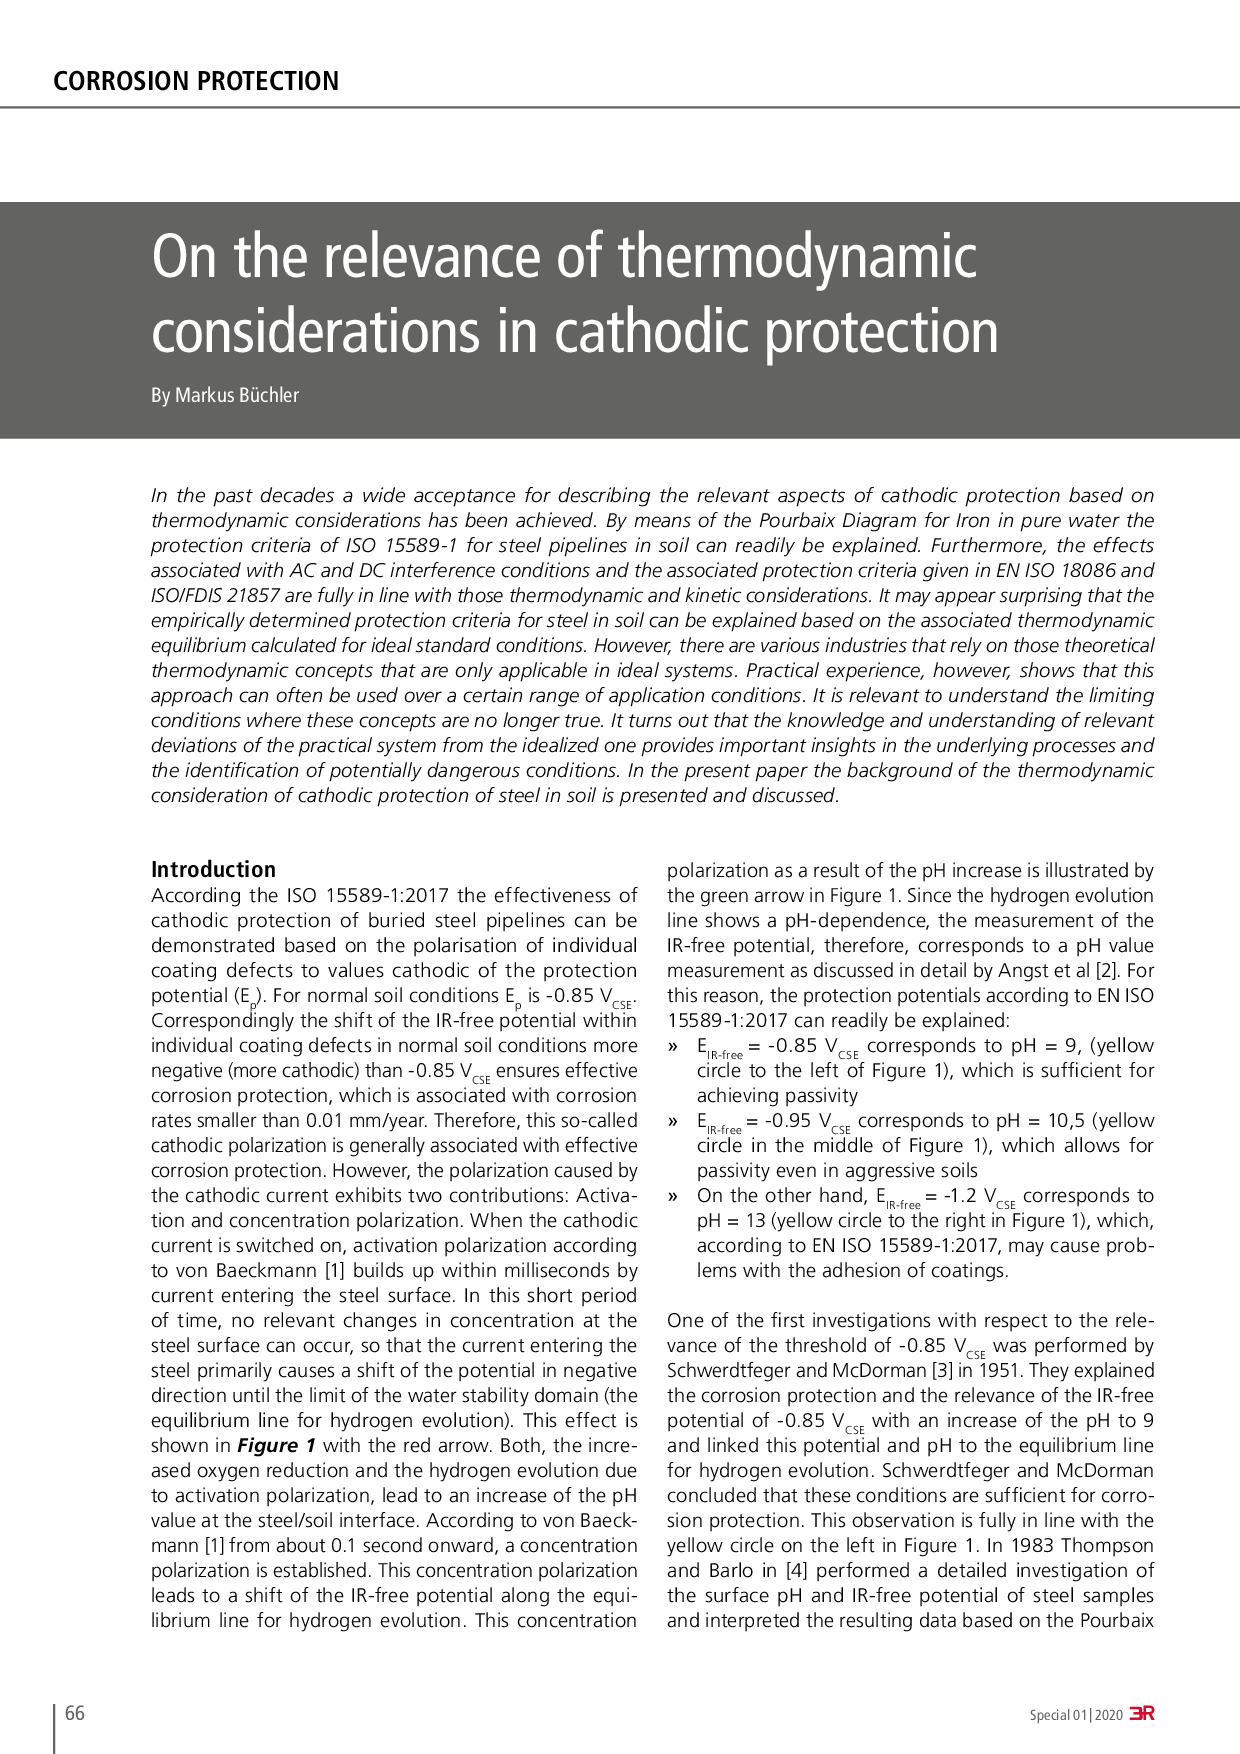 Die Wirksamkeit des kathodischen Korrosionsschutzes bei Abschirmung: Enthaftete Werks- und Nachumhüllungen